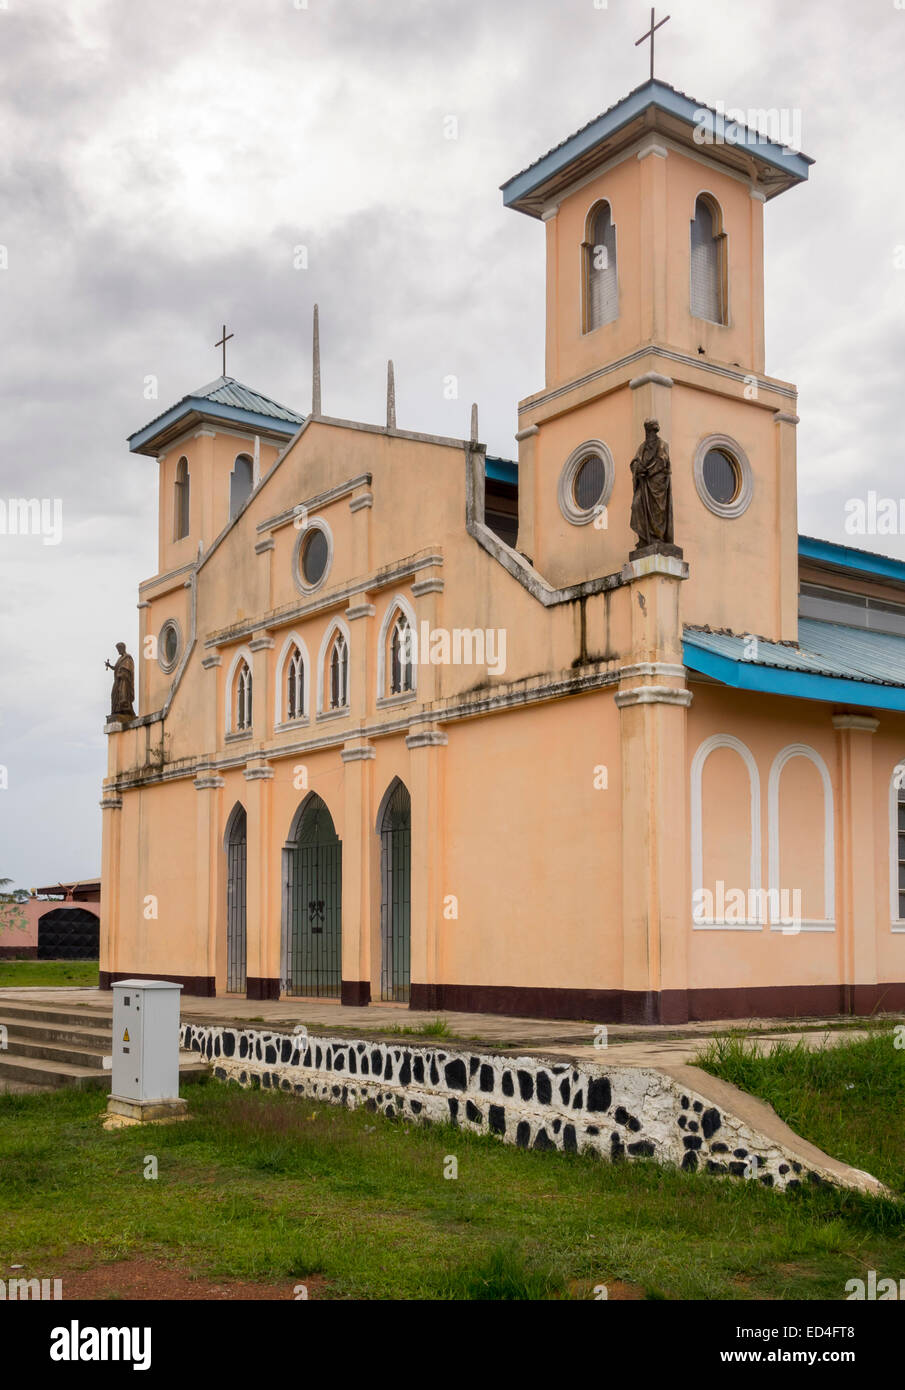 Façade de l'ancienne église catholique espagnole coloniale dans la ville de Anisok en Guinée équatoriale, l'Afrique Banque D'Images